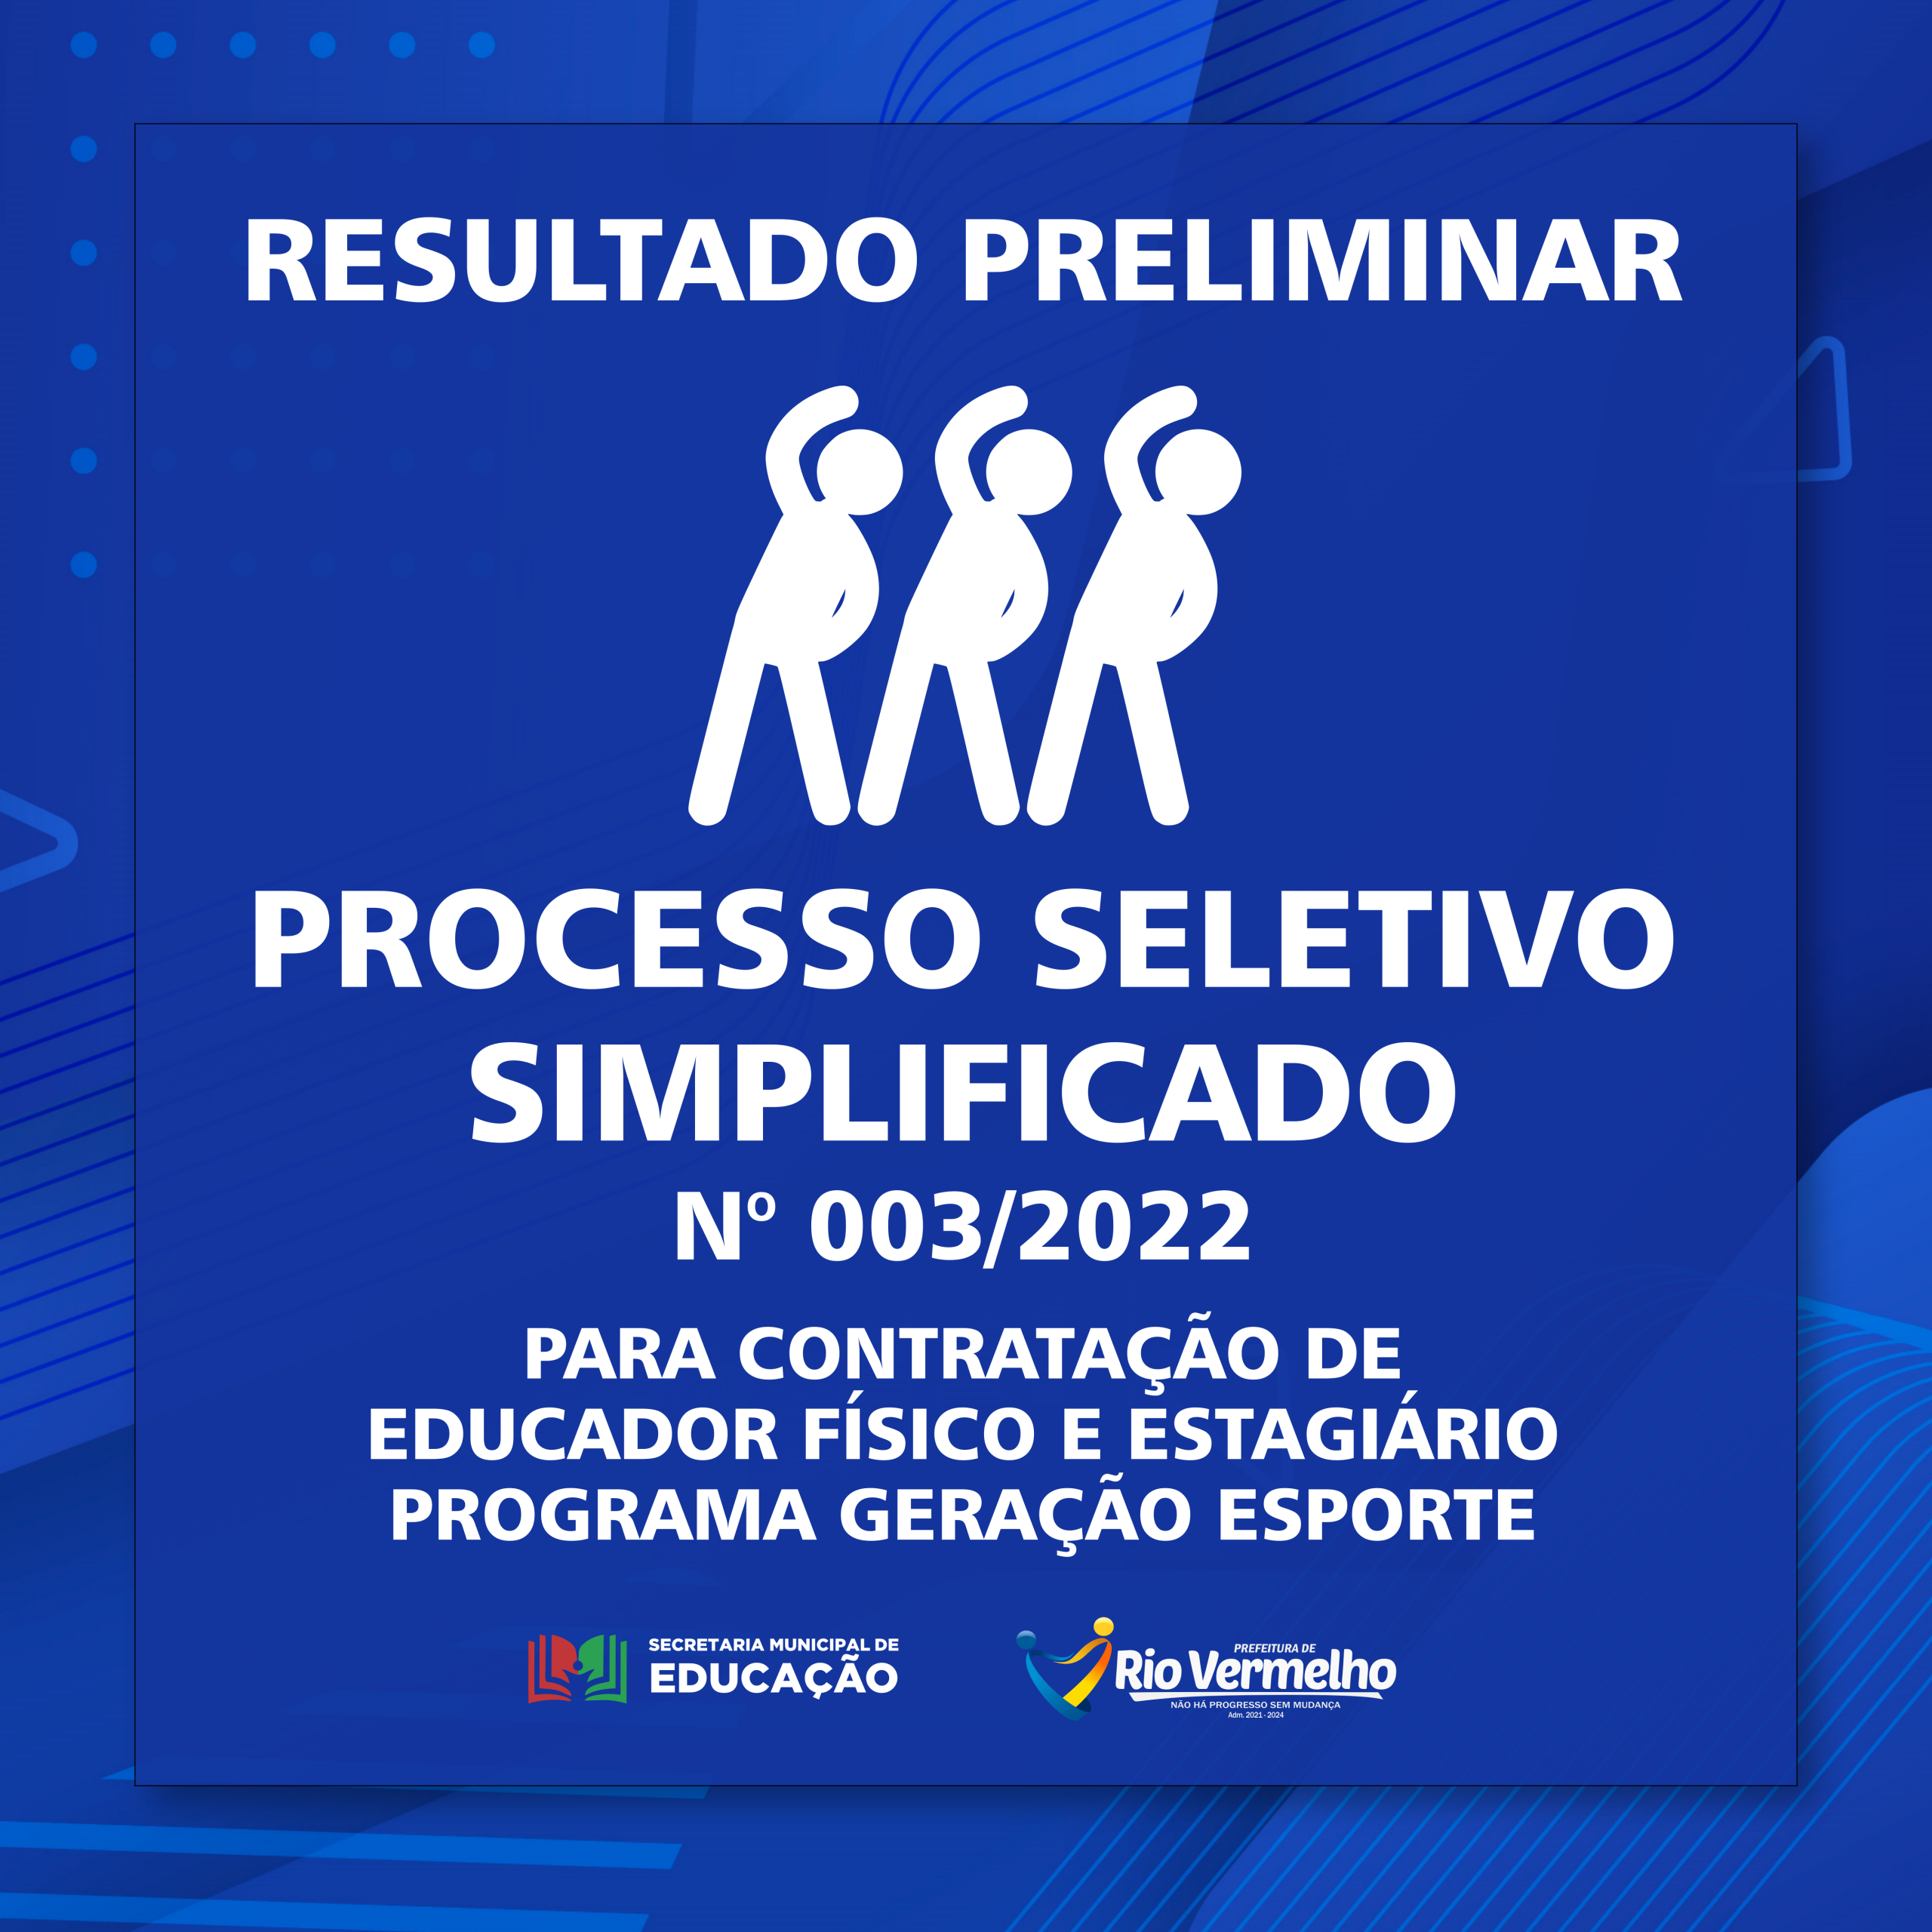 You are currently viewing RESULTADO PRELIMINAR DO PROCESSO SELETIVO SIMPLIFICADO EDITAL Nº 003/2022 – SECRETARIA MUNICIPAL DE EDUCAÇÃO